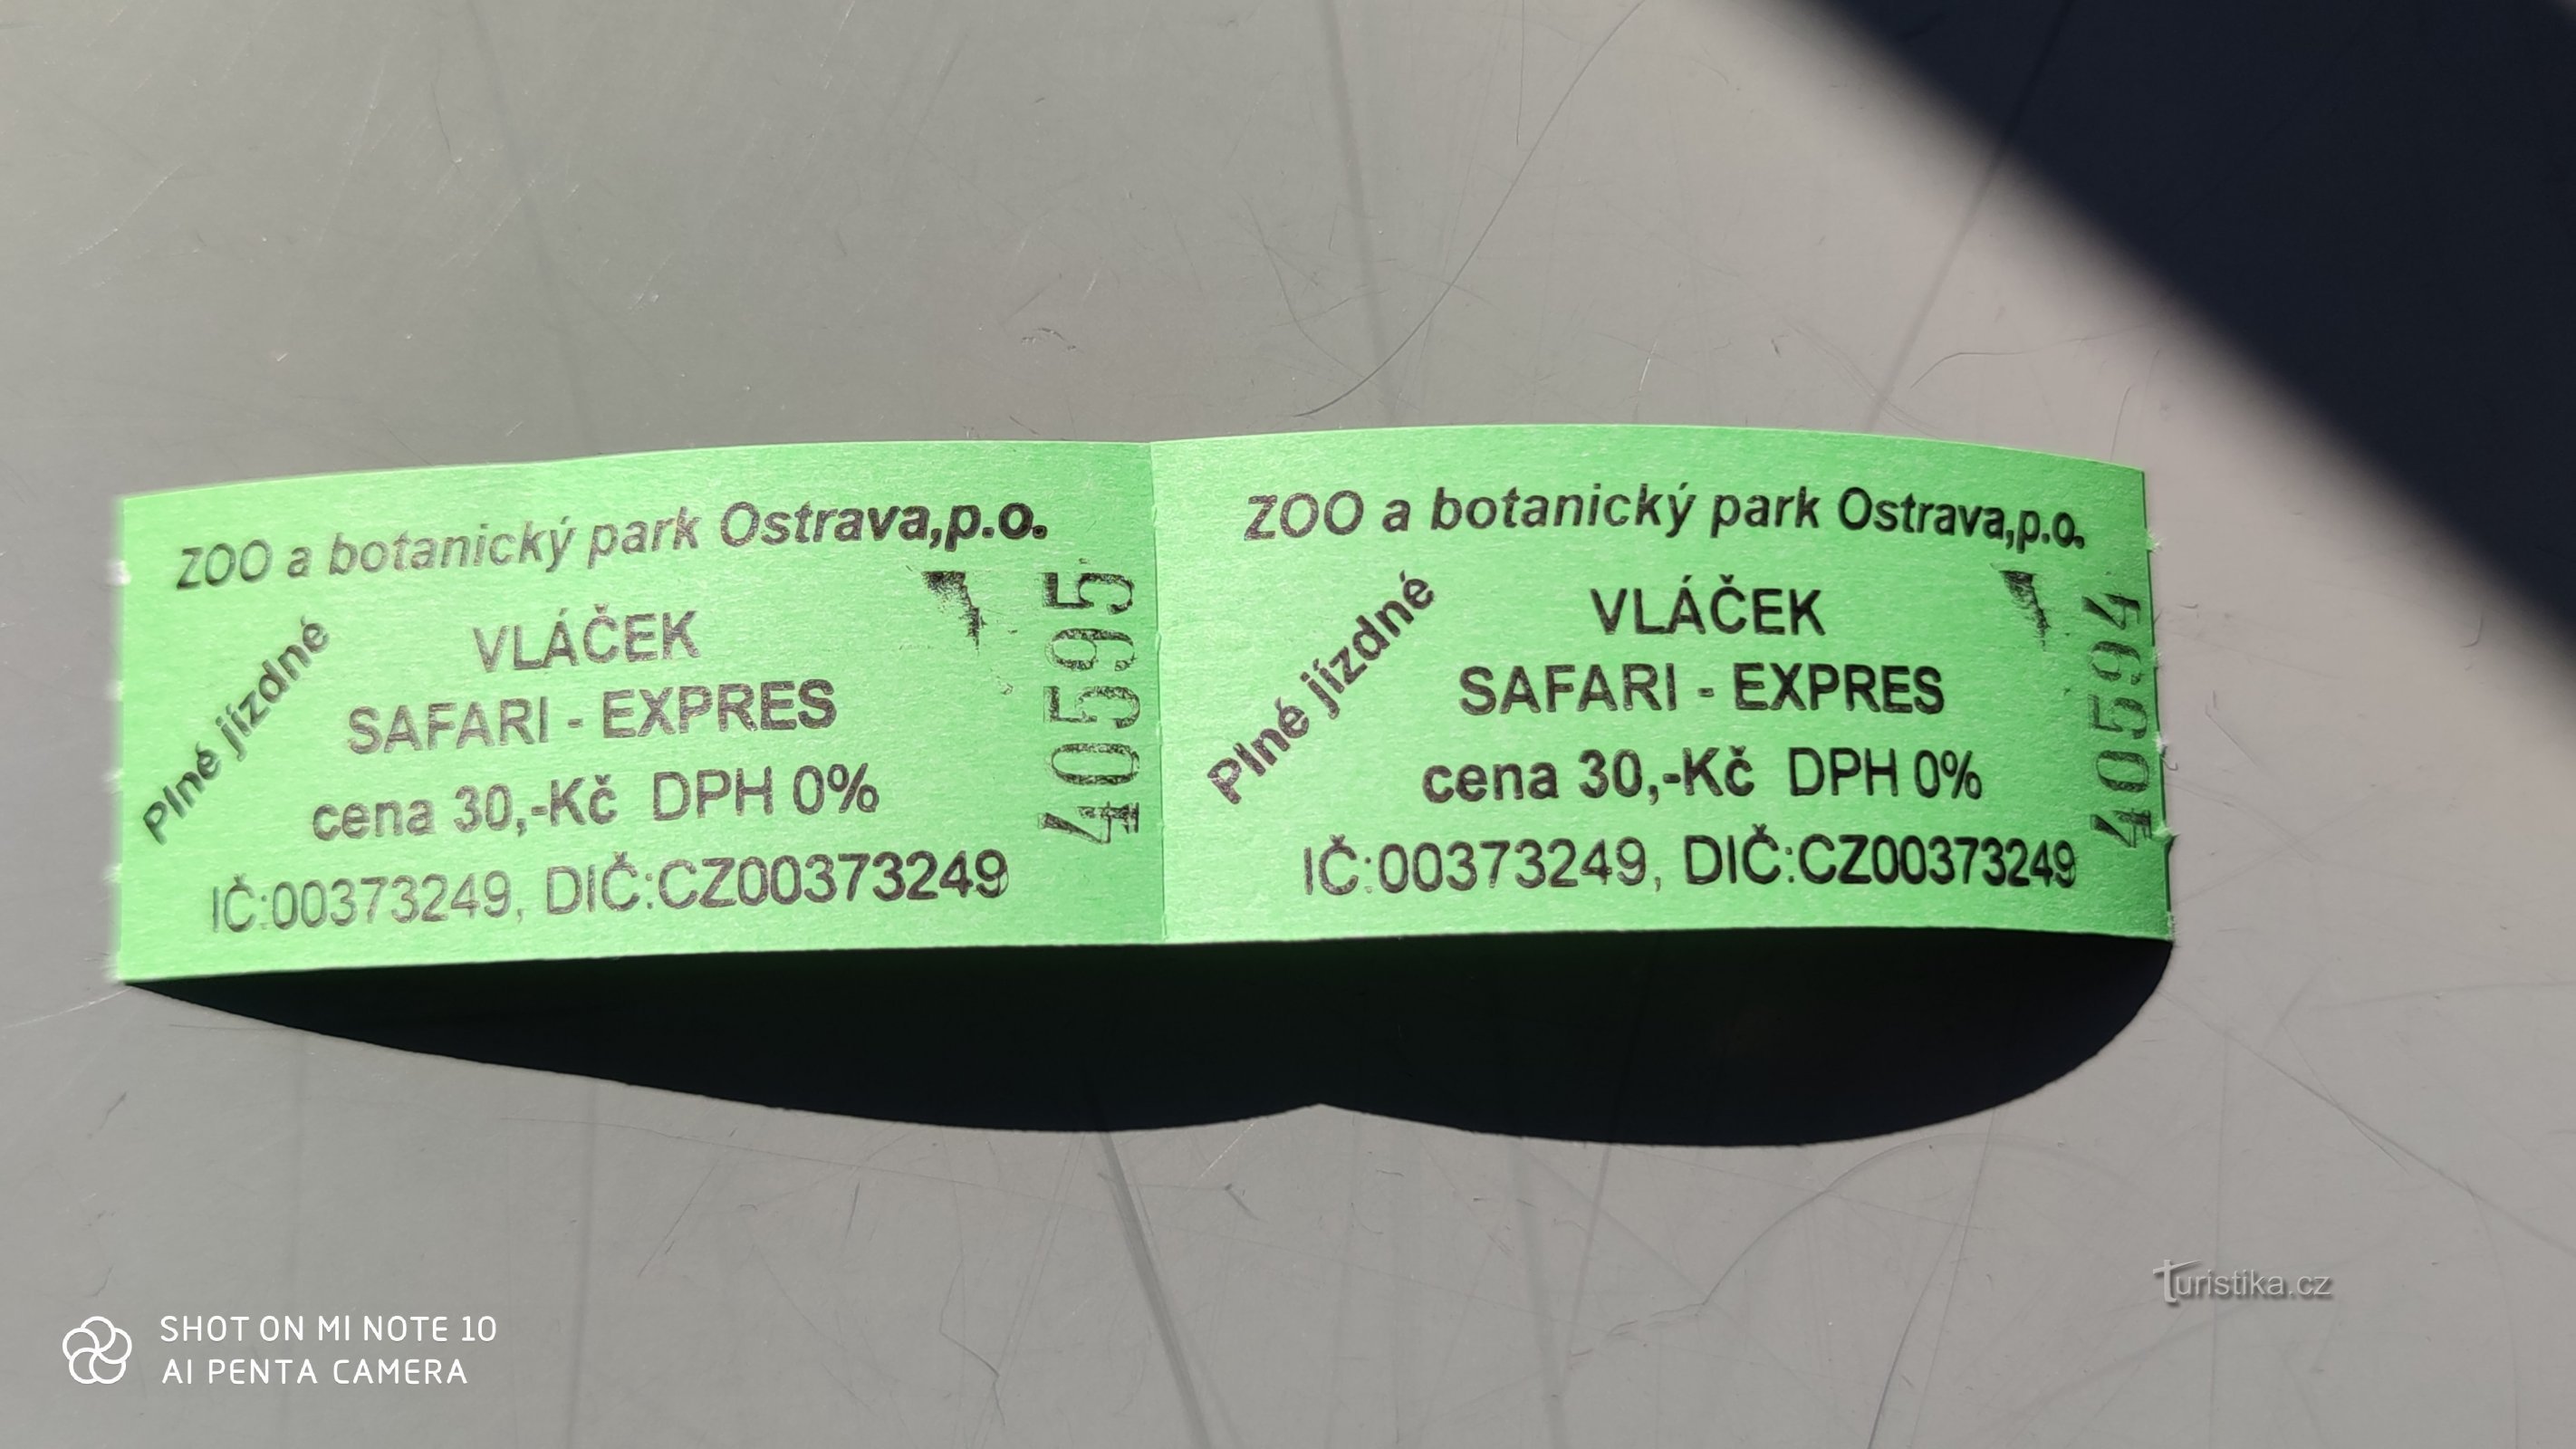 Safari express at the Ostrava Zoo